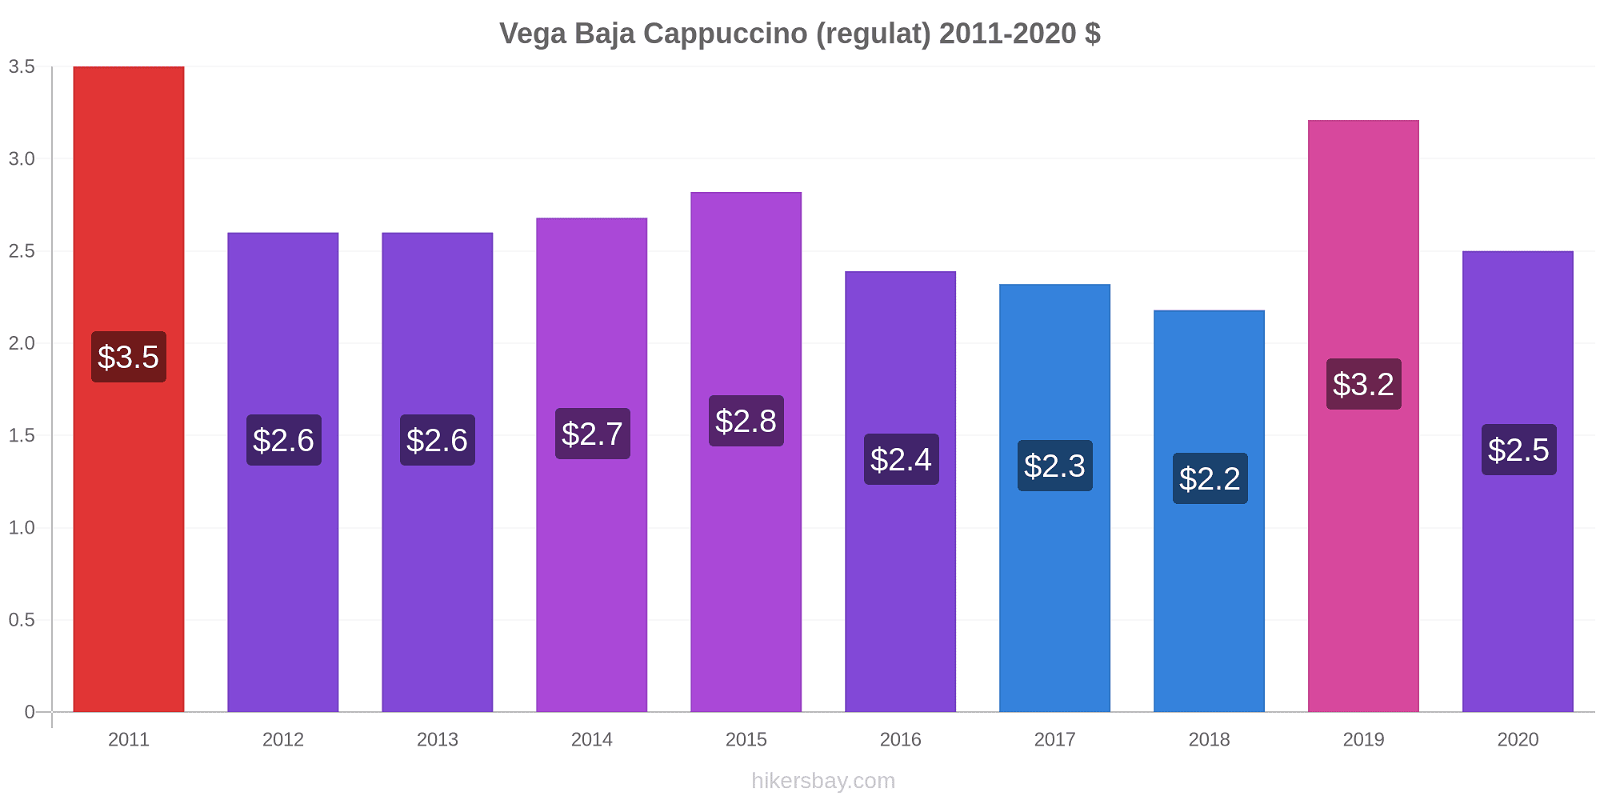 Vega Baja modificări de preț Cappuccino (regulat) hikersbay.com